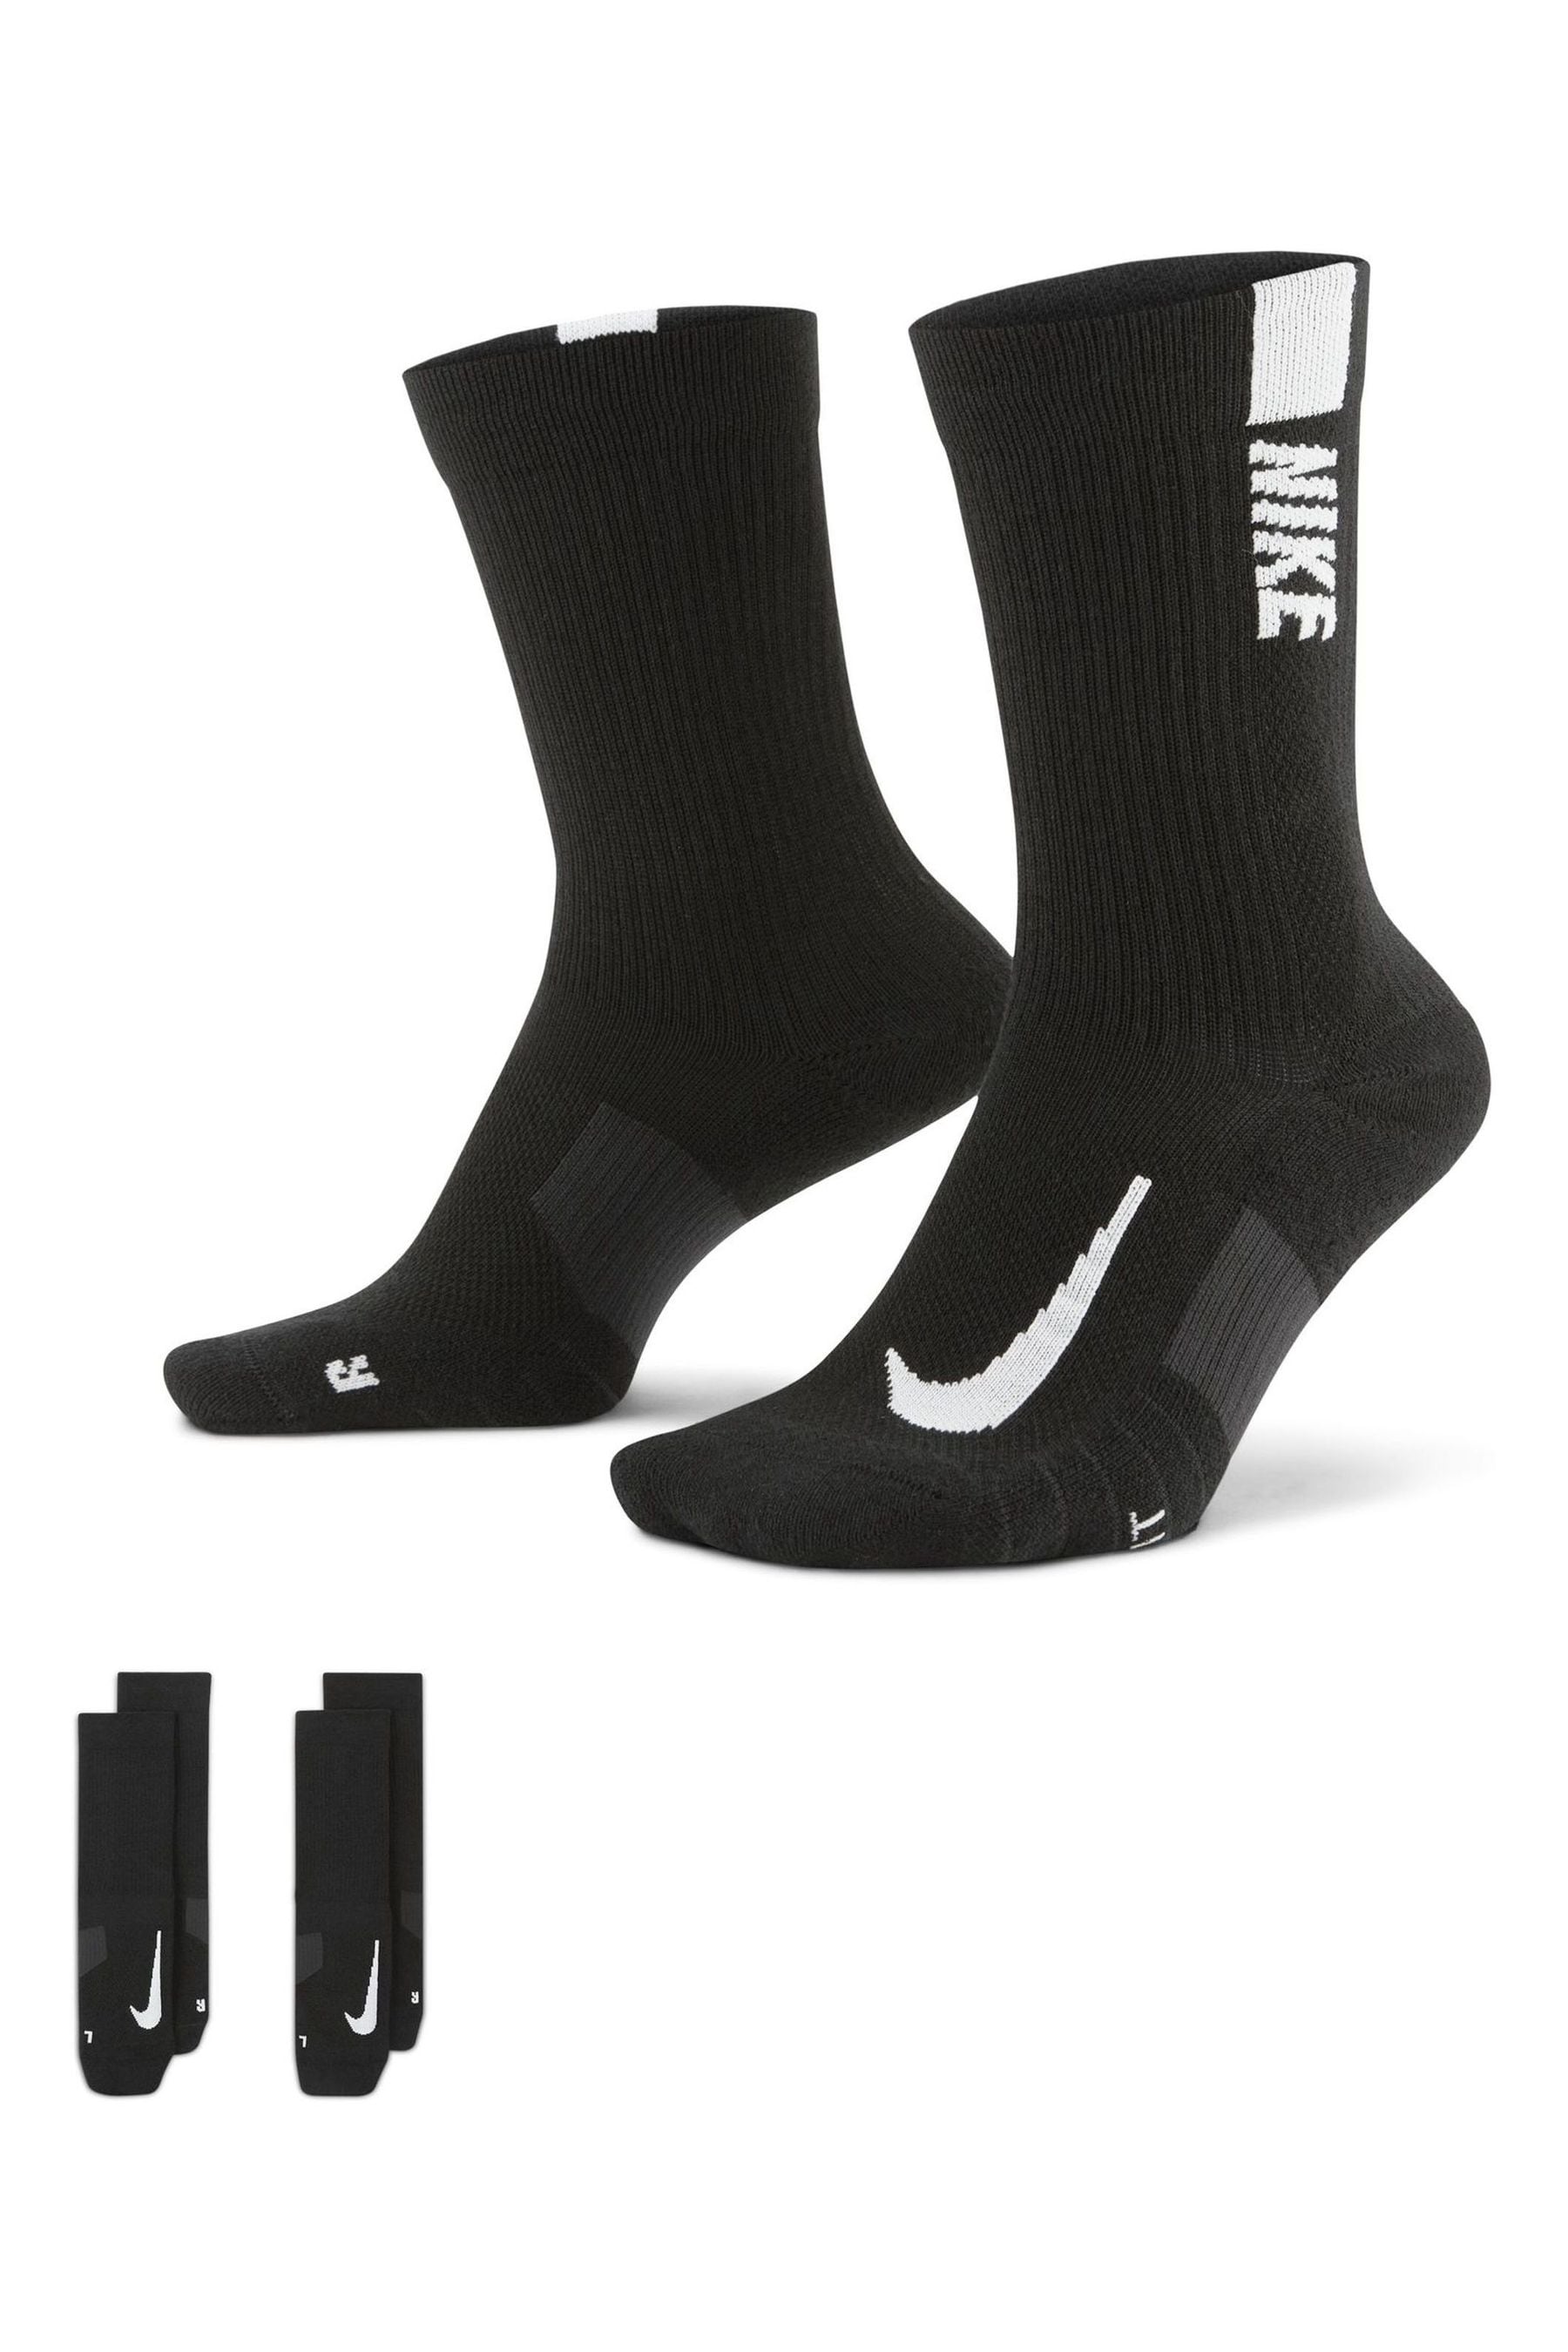 Buy Nike Black/White Multiplier Crew Socks 2 Pack from the Next UK ...